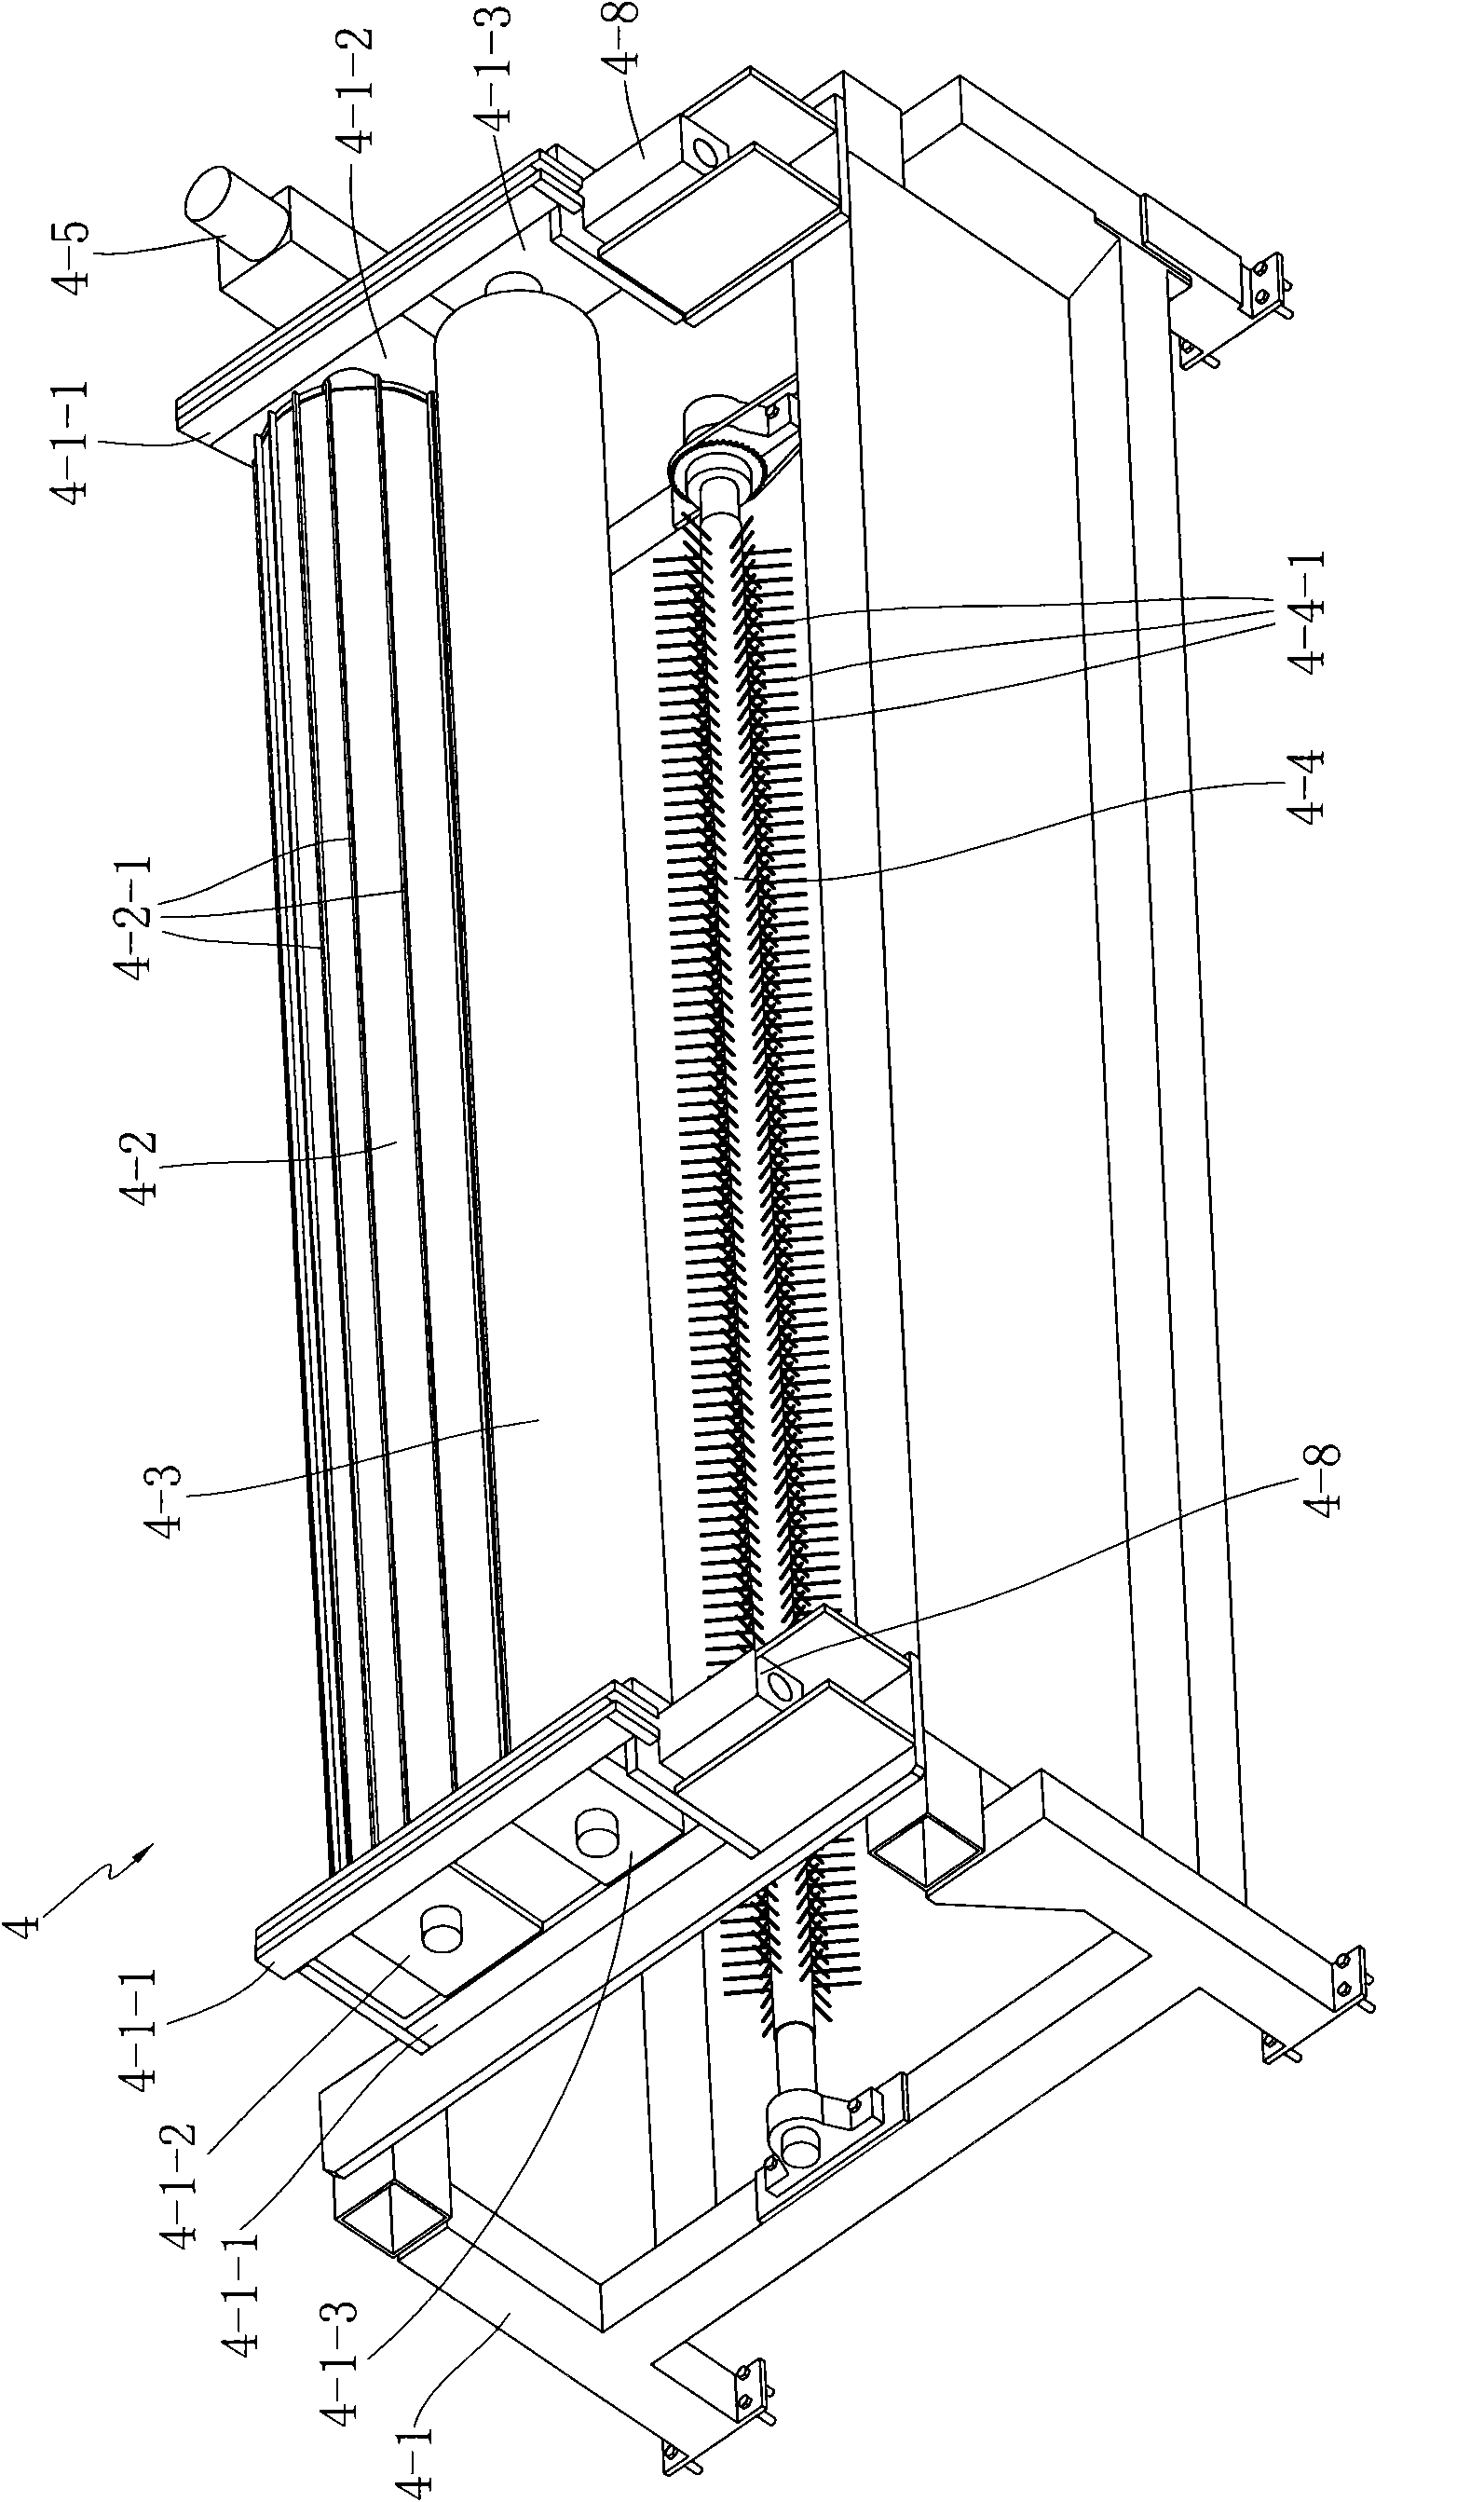 Double axial warp knitting machine